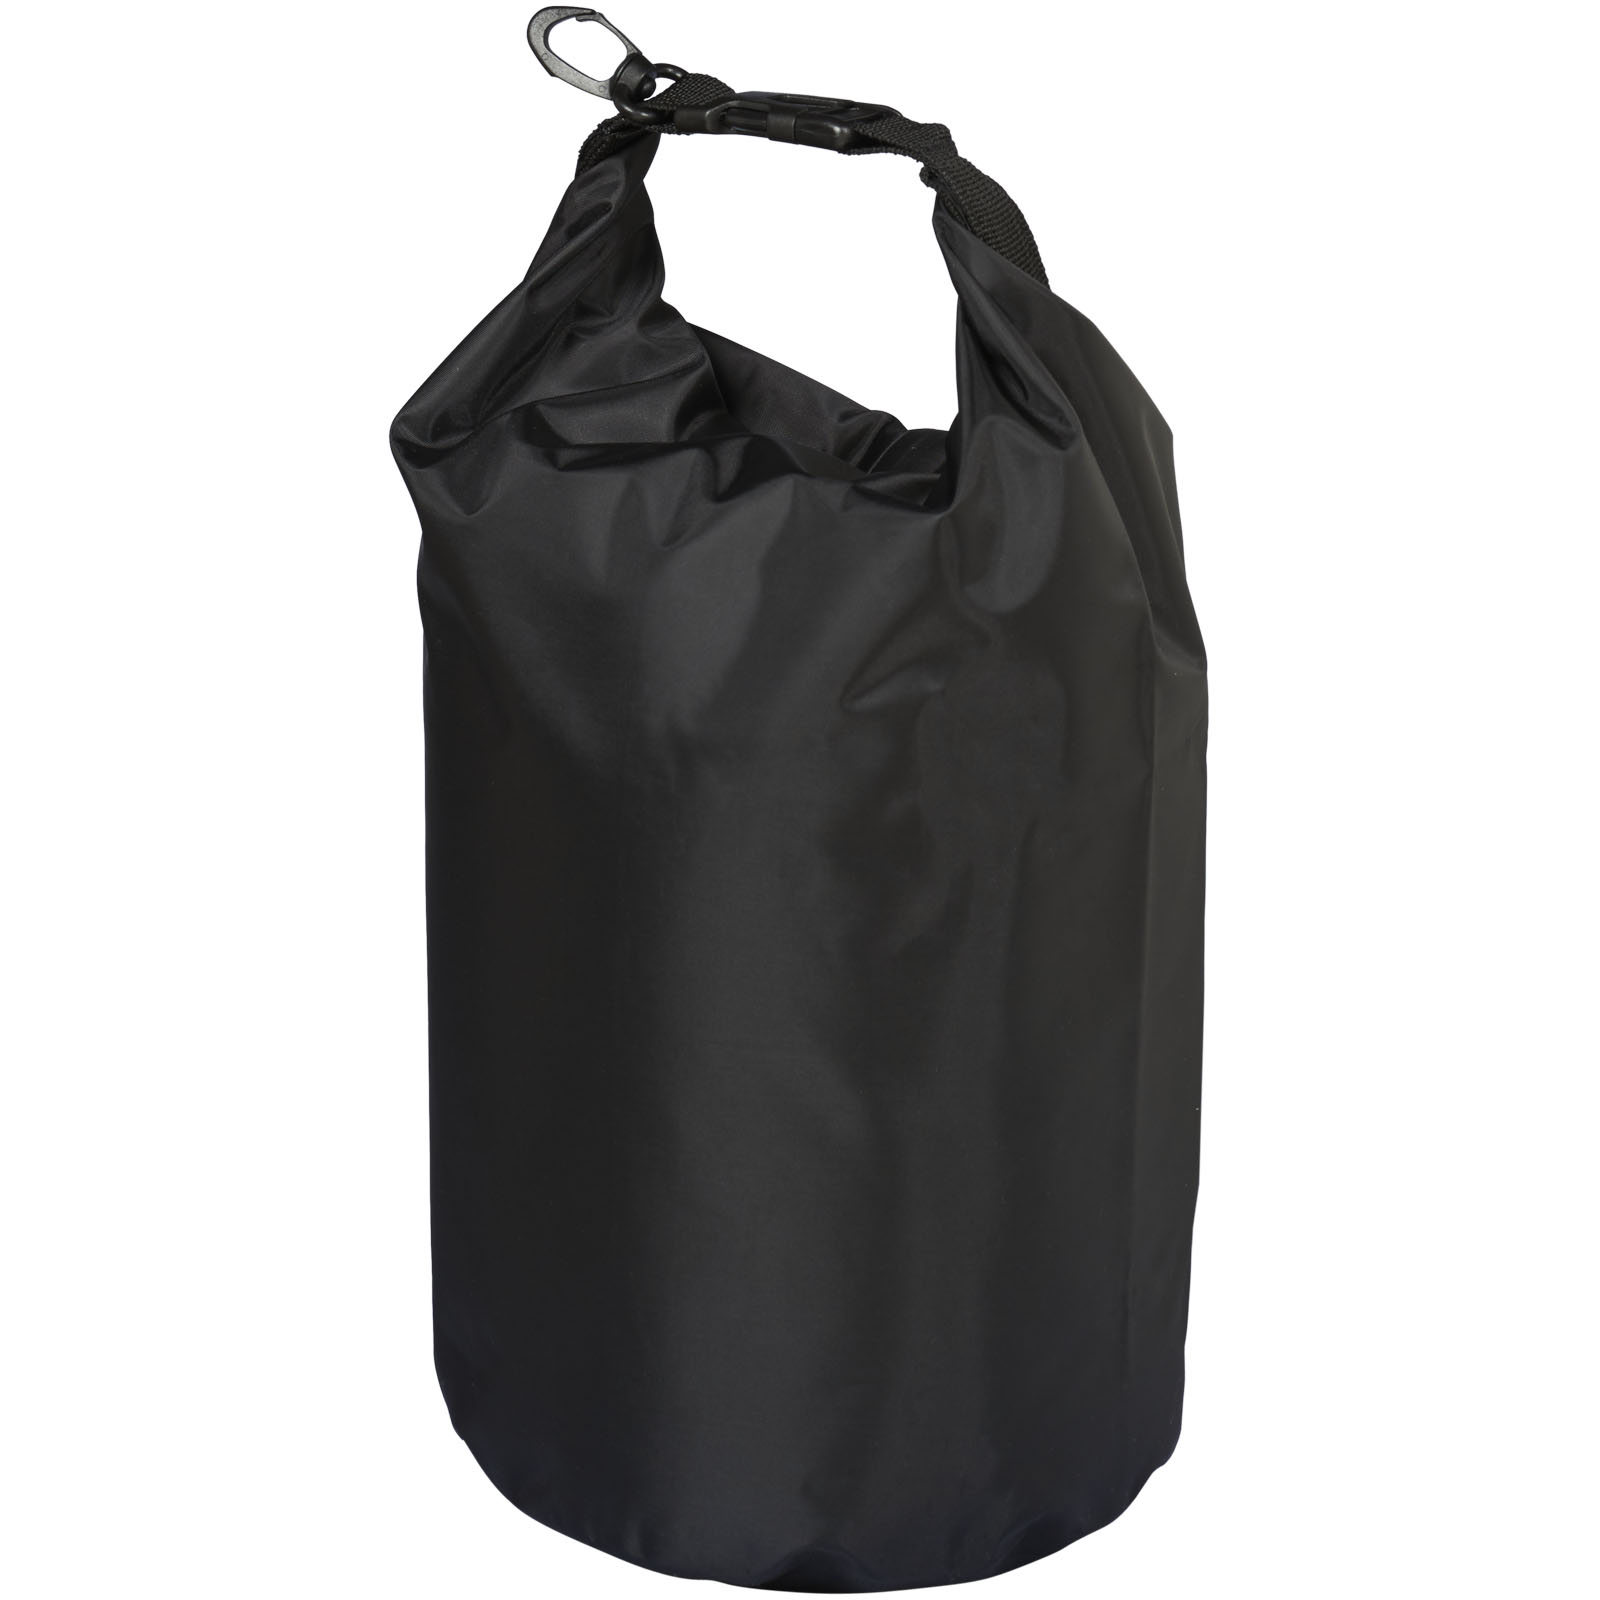 Outdoor Items - Camper 10 litre waterproof bag